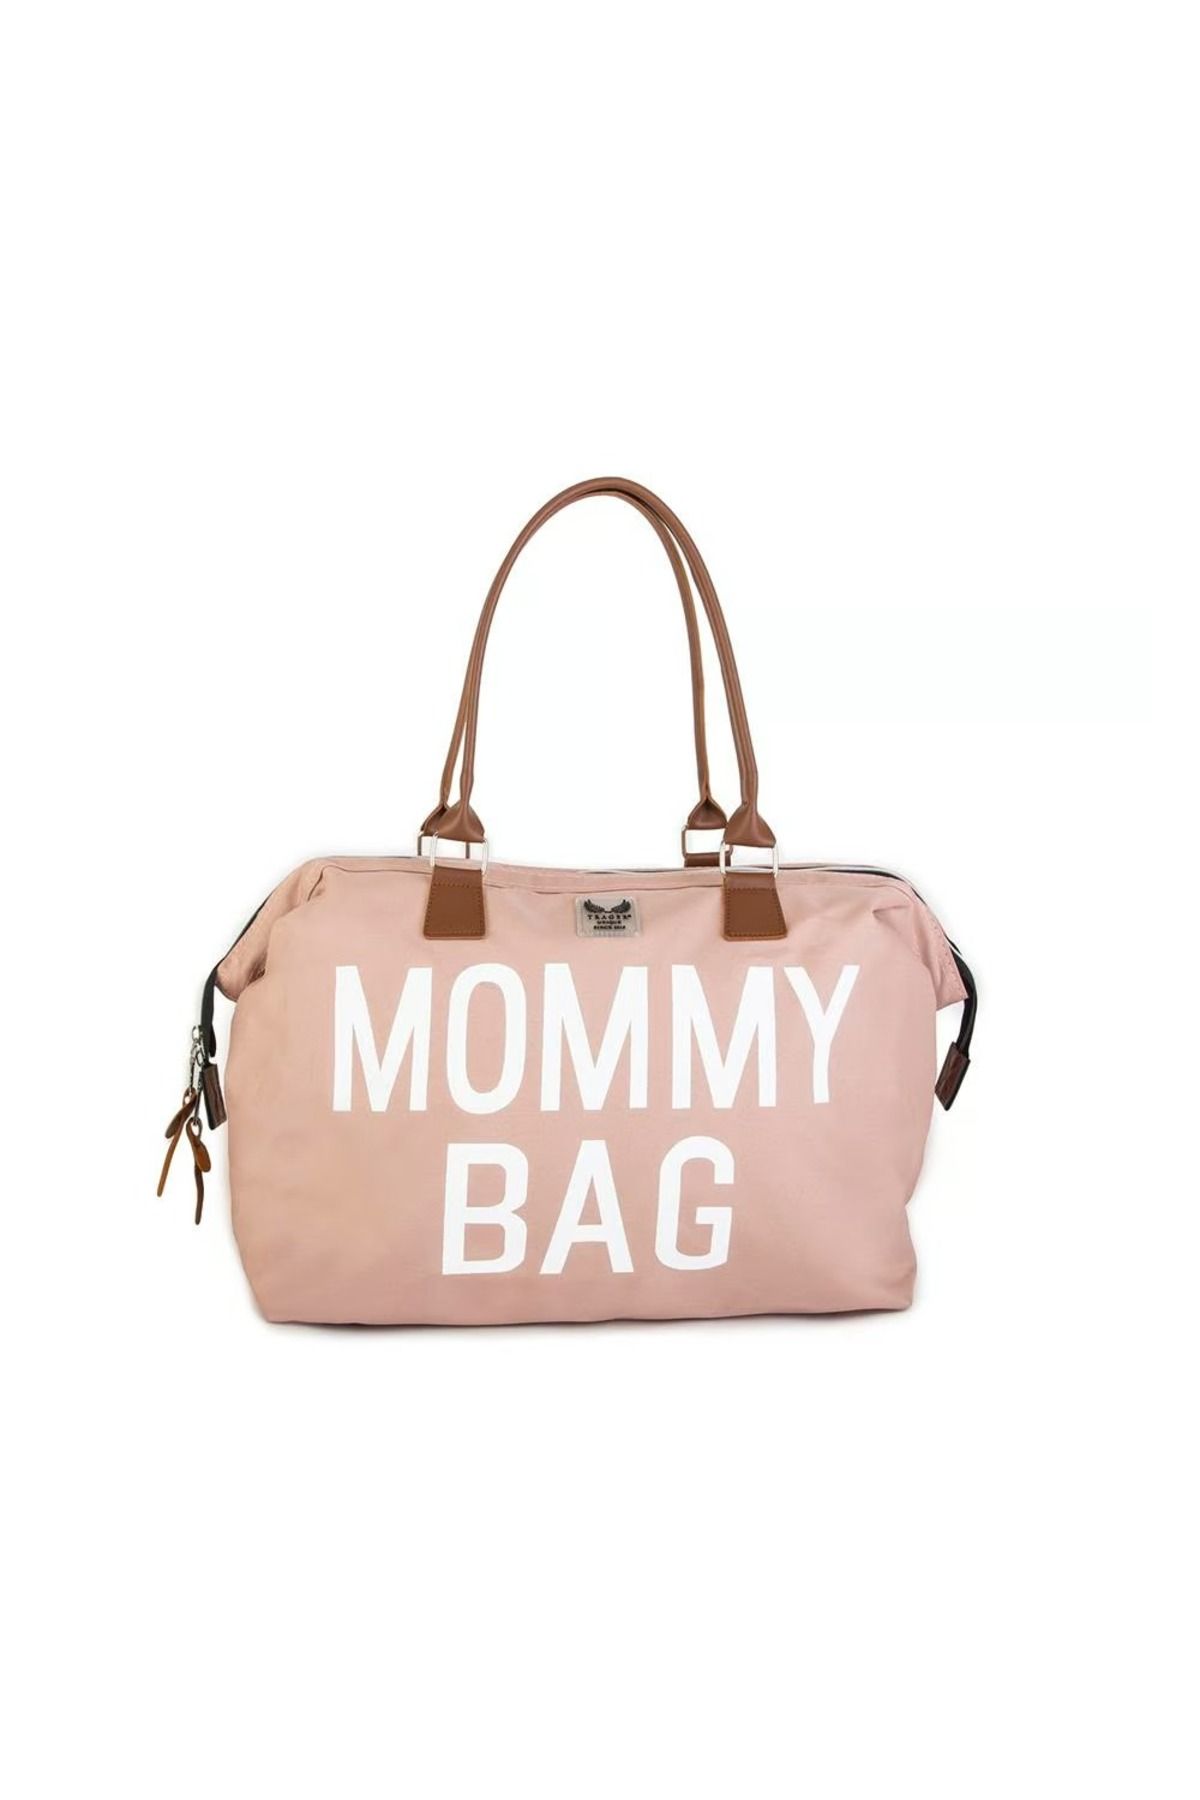 ÇANTA Trager Mommy Bag